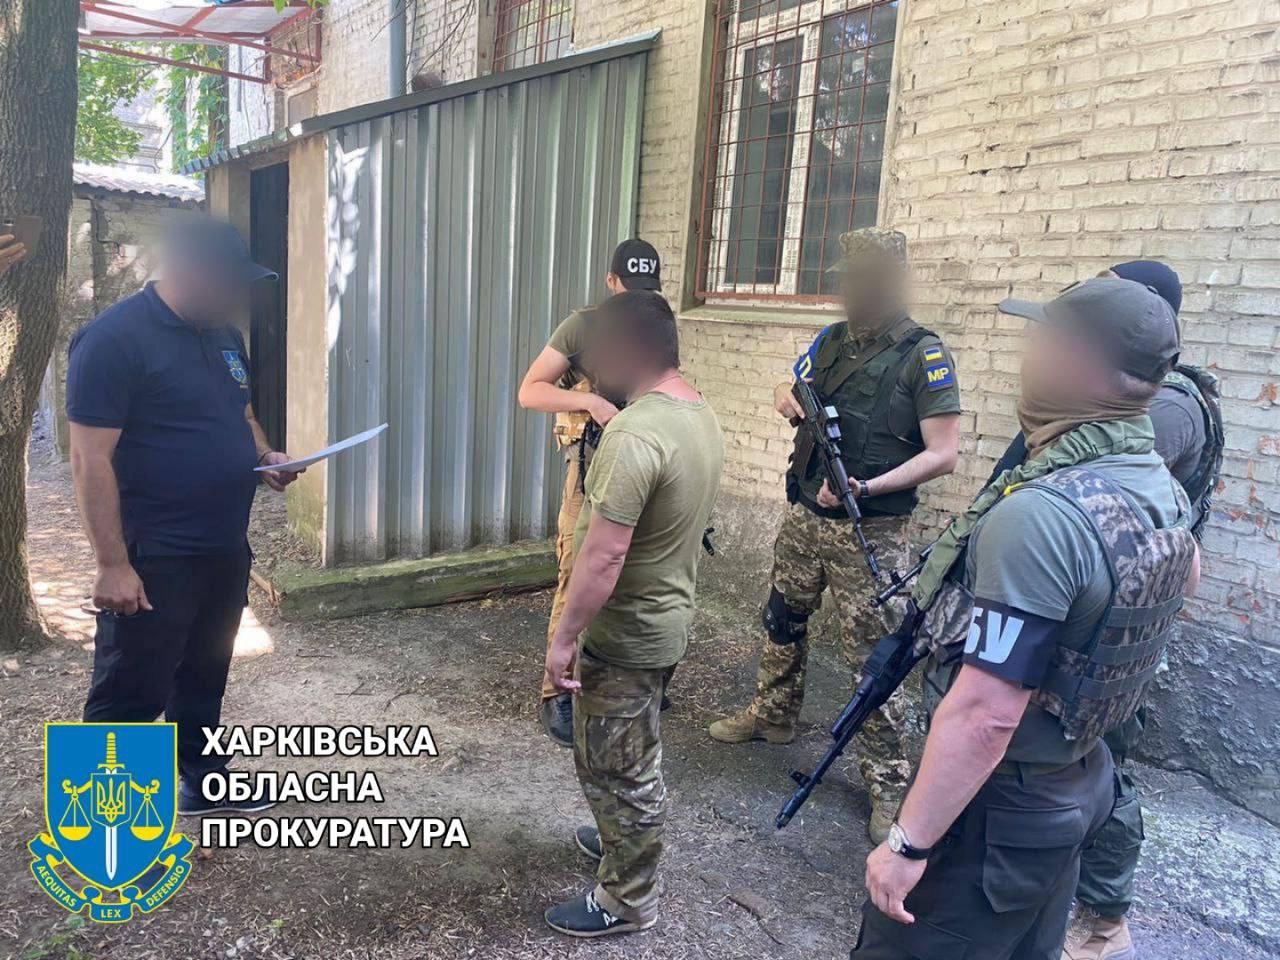 Депутата-предателя из Циркунов задержали в Харькове